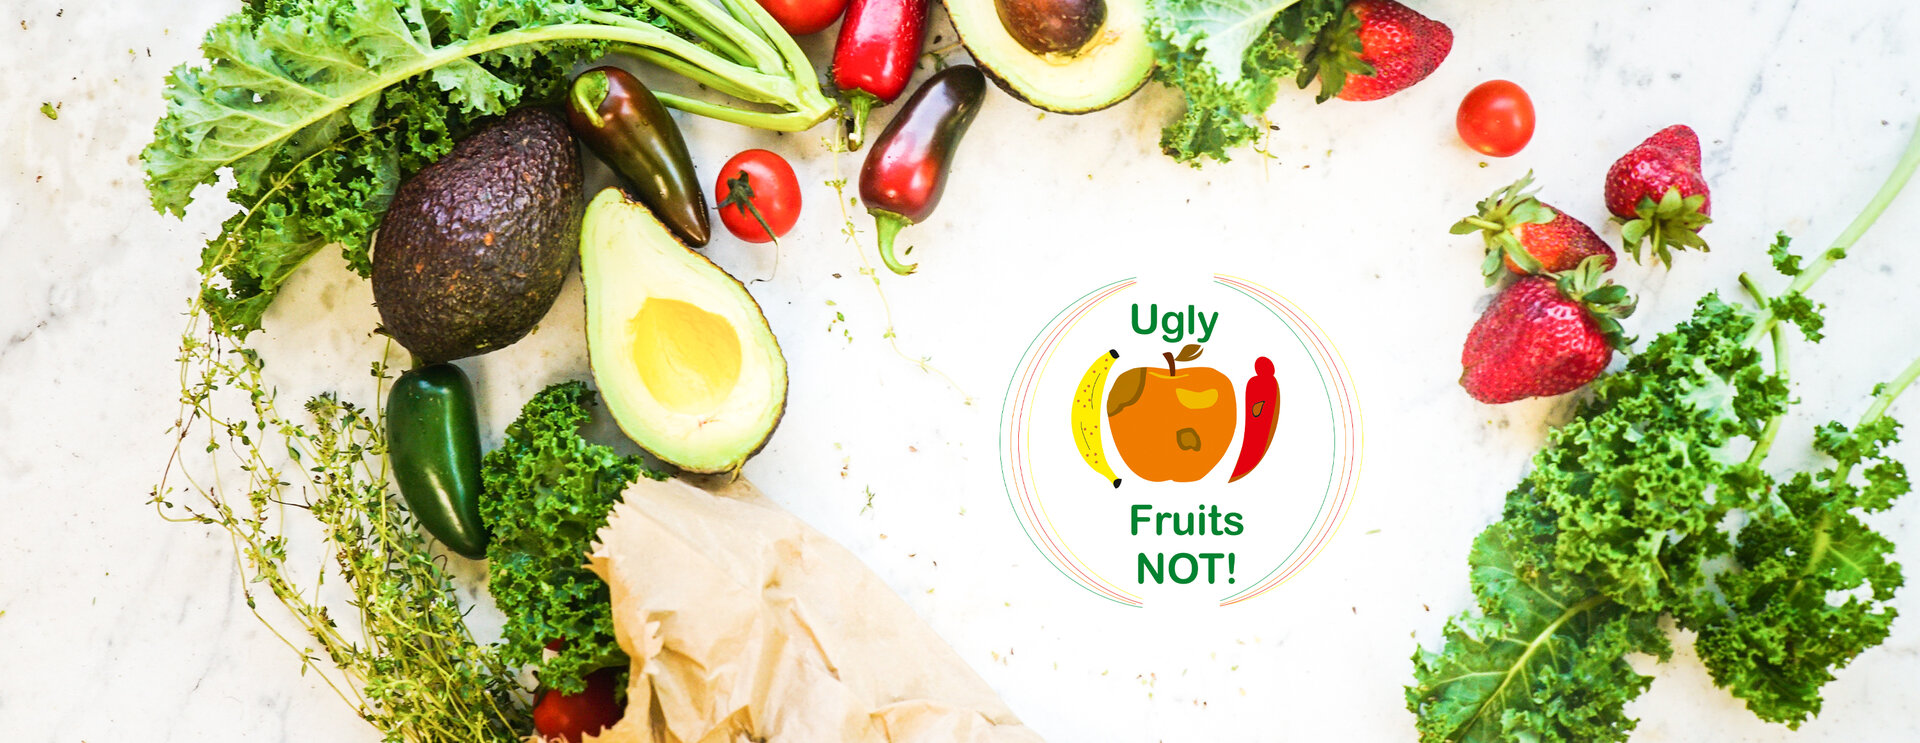 Zdjęcie warzyw i owoców. W środku zdjęcia znajduje się logo projektu, które przedstawia owoce i warzywa oraz słowa „Ugly Fruits NOT!” width=